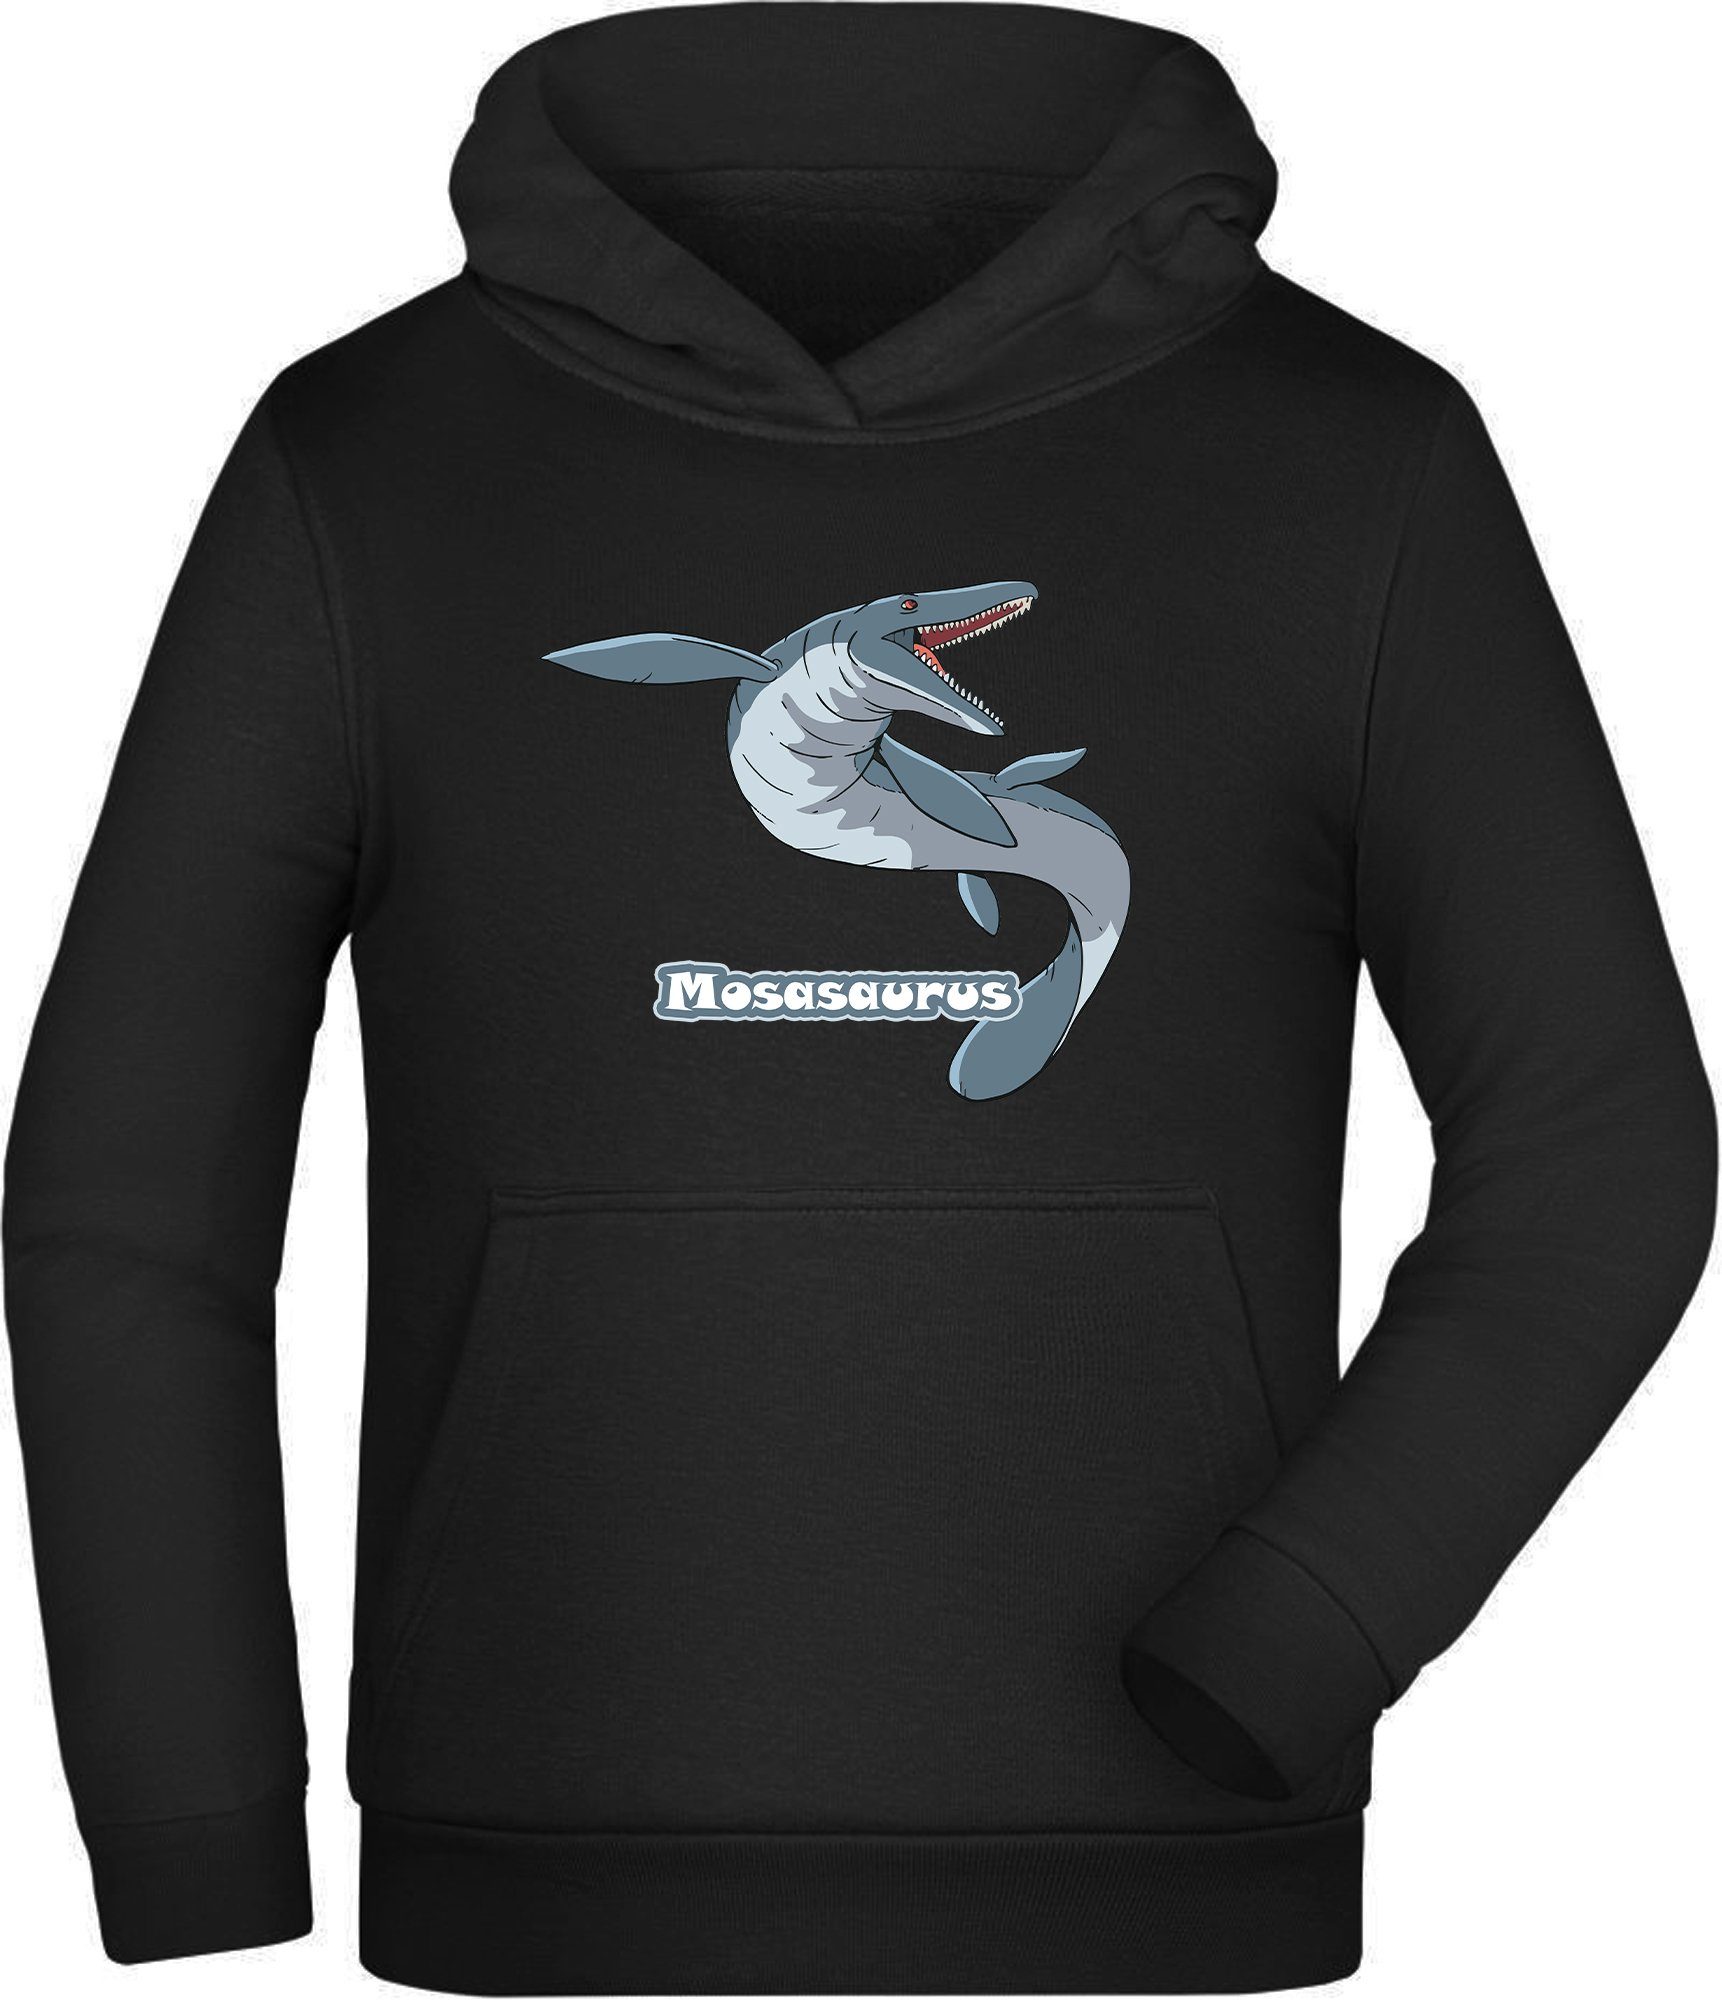 MyDesign24 Hoodie Kinder Kapuzen Sweatshirt - Mit Mosasaurus Print  Kapuzensweater mit Aufdruck, i51